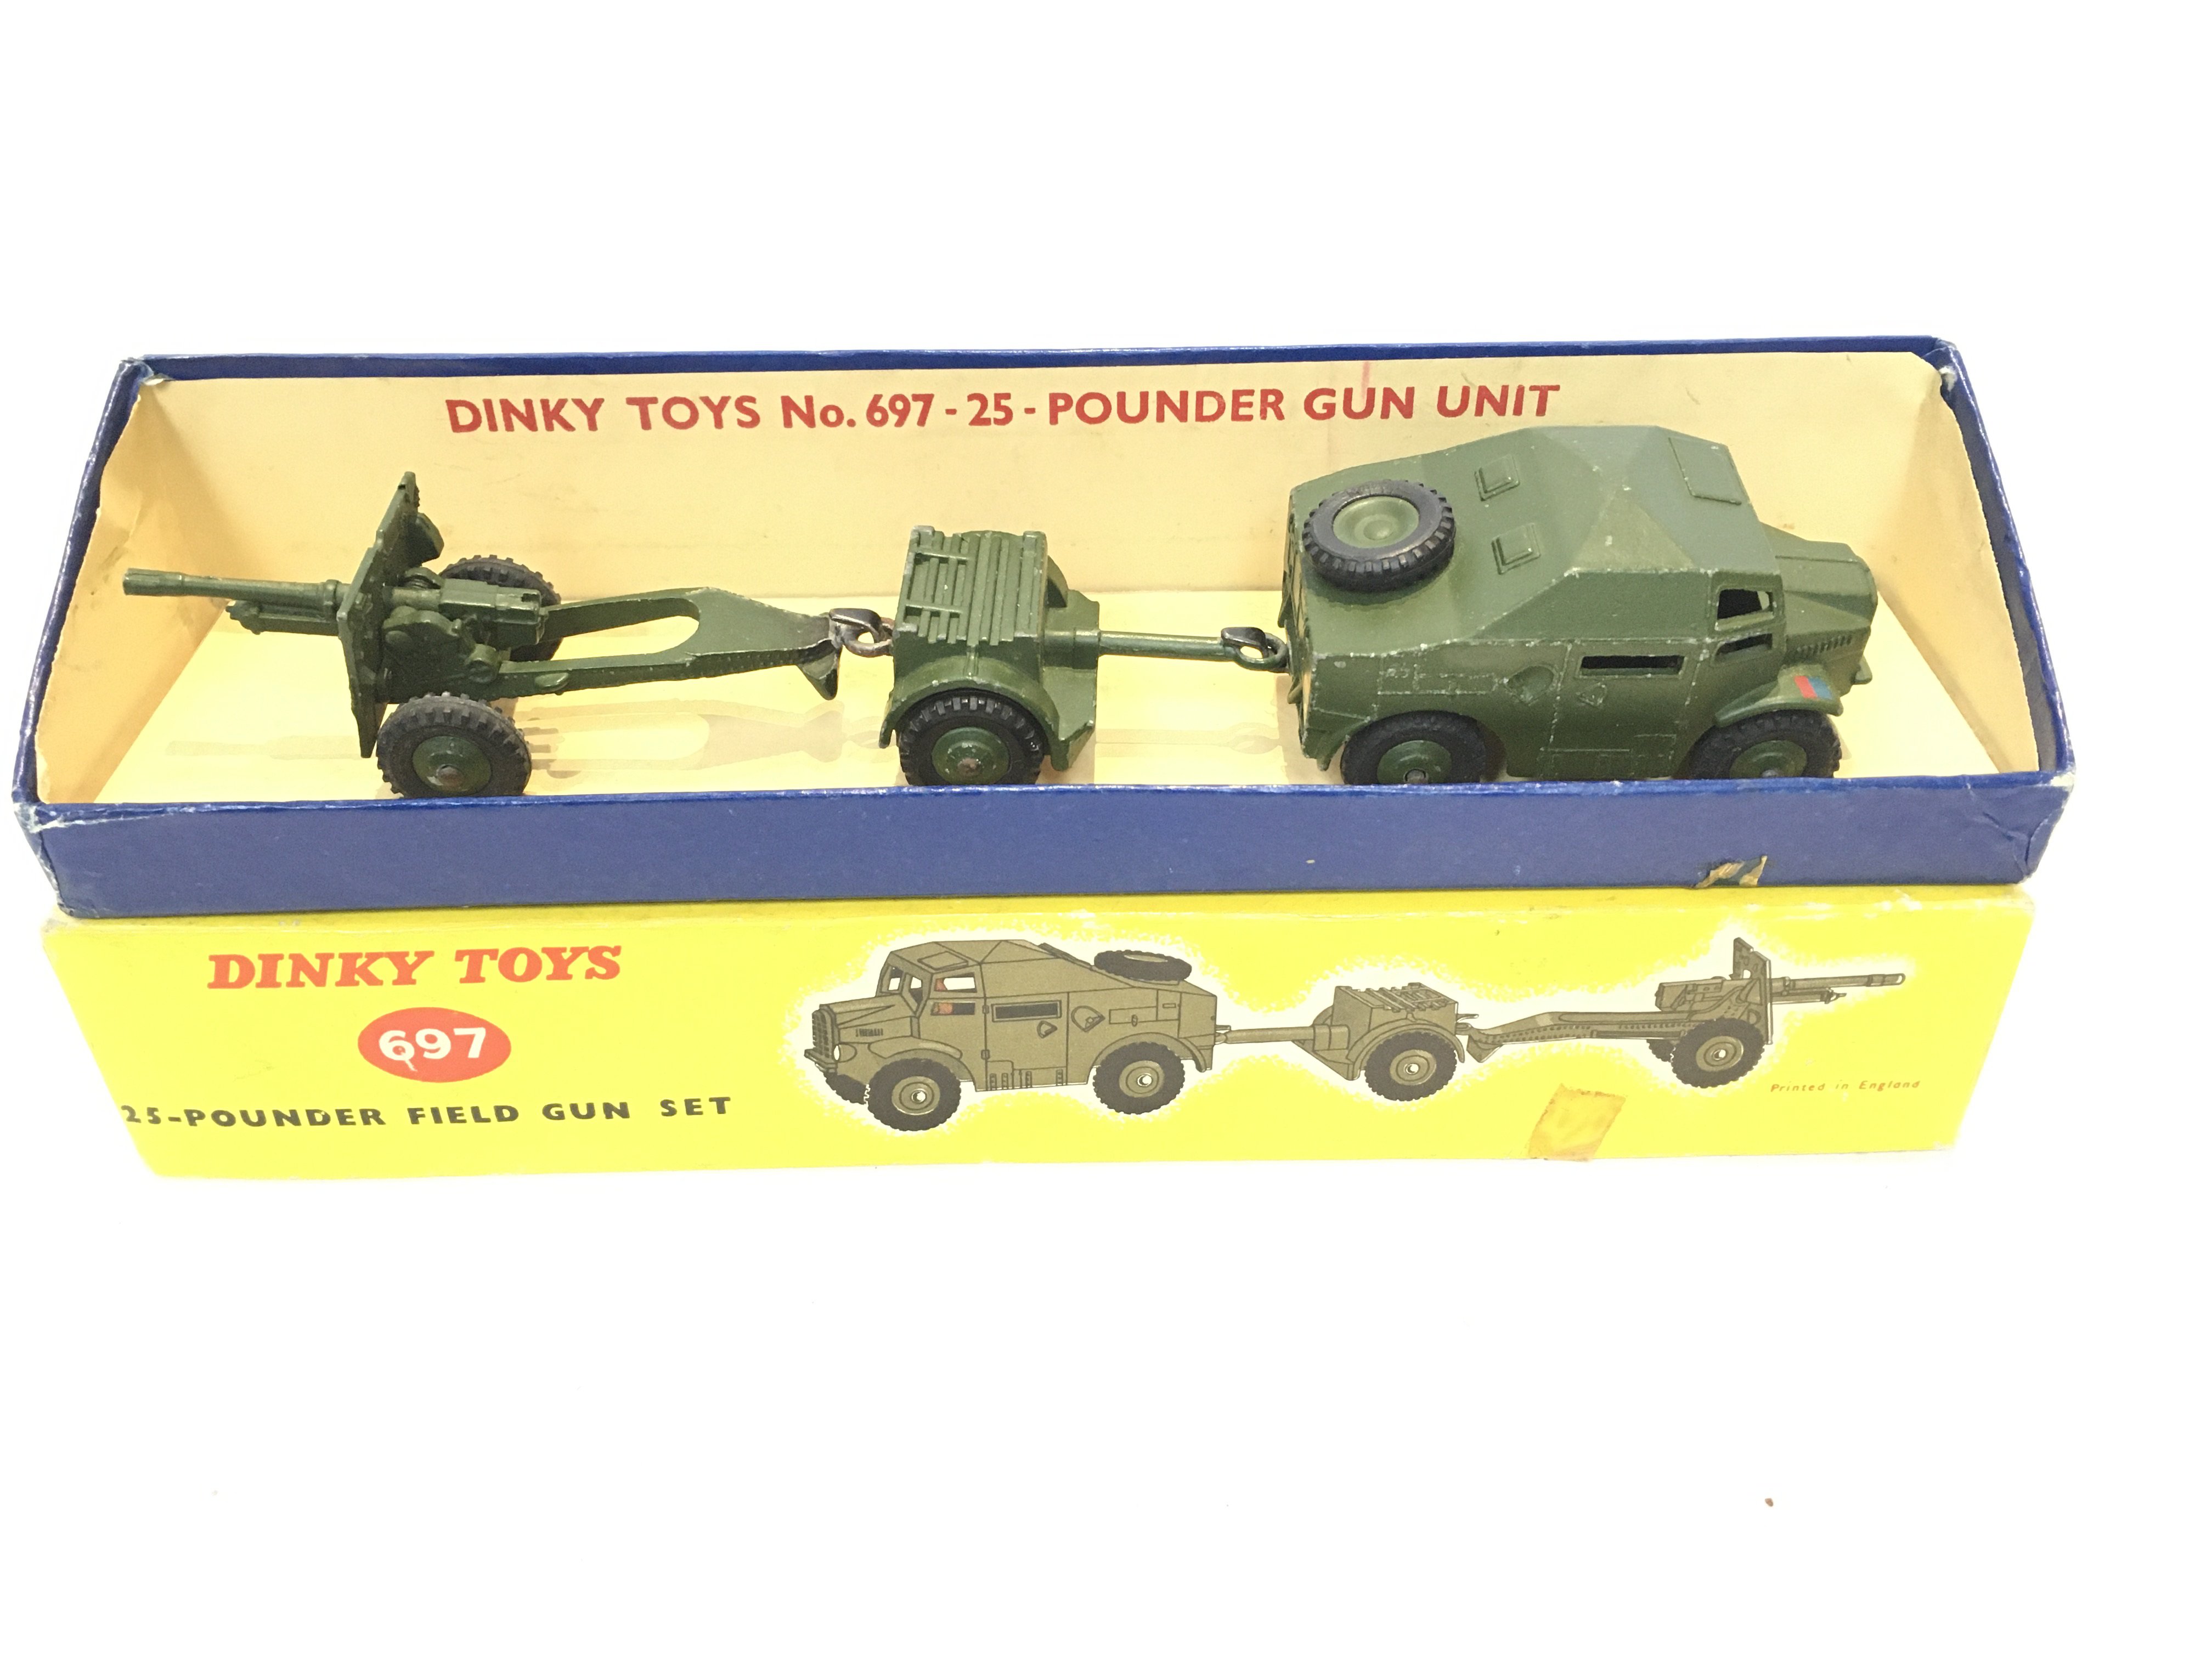 A Boxed Dinky 25-Pounder Field Gun Set #697.